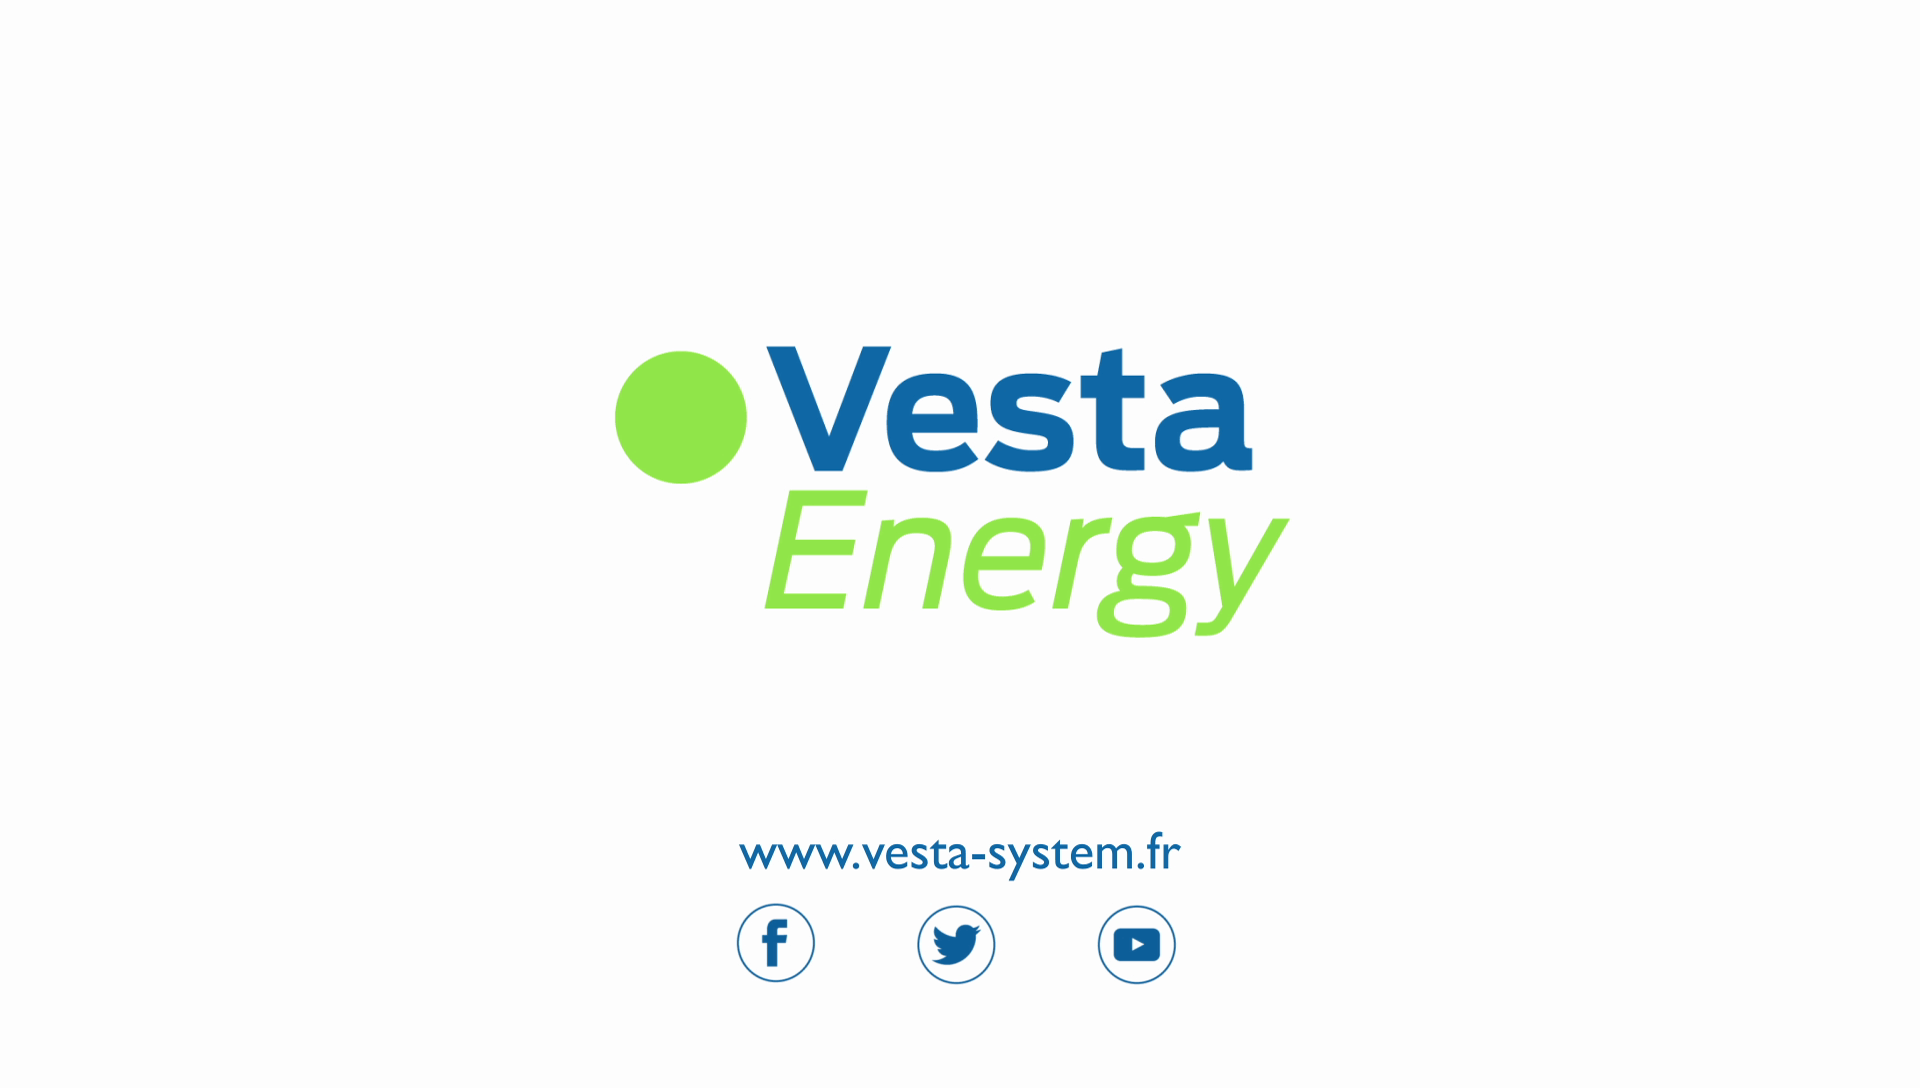 Motion design Vesta Energy